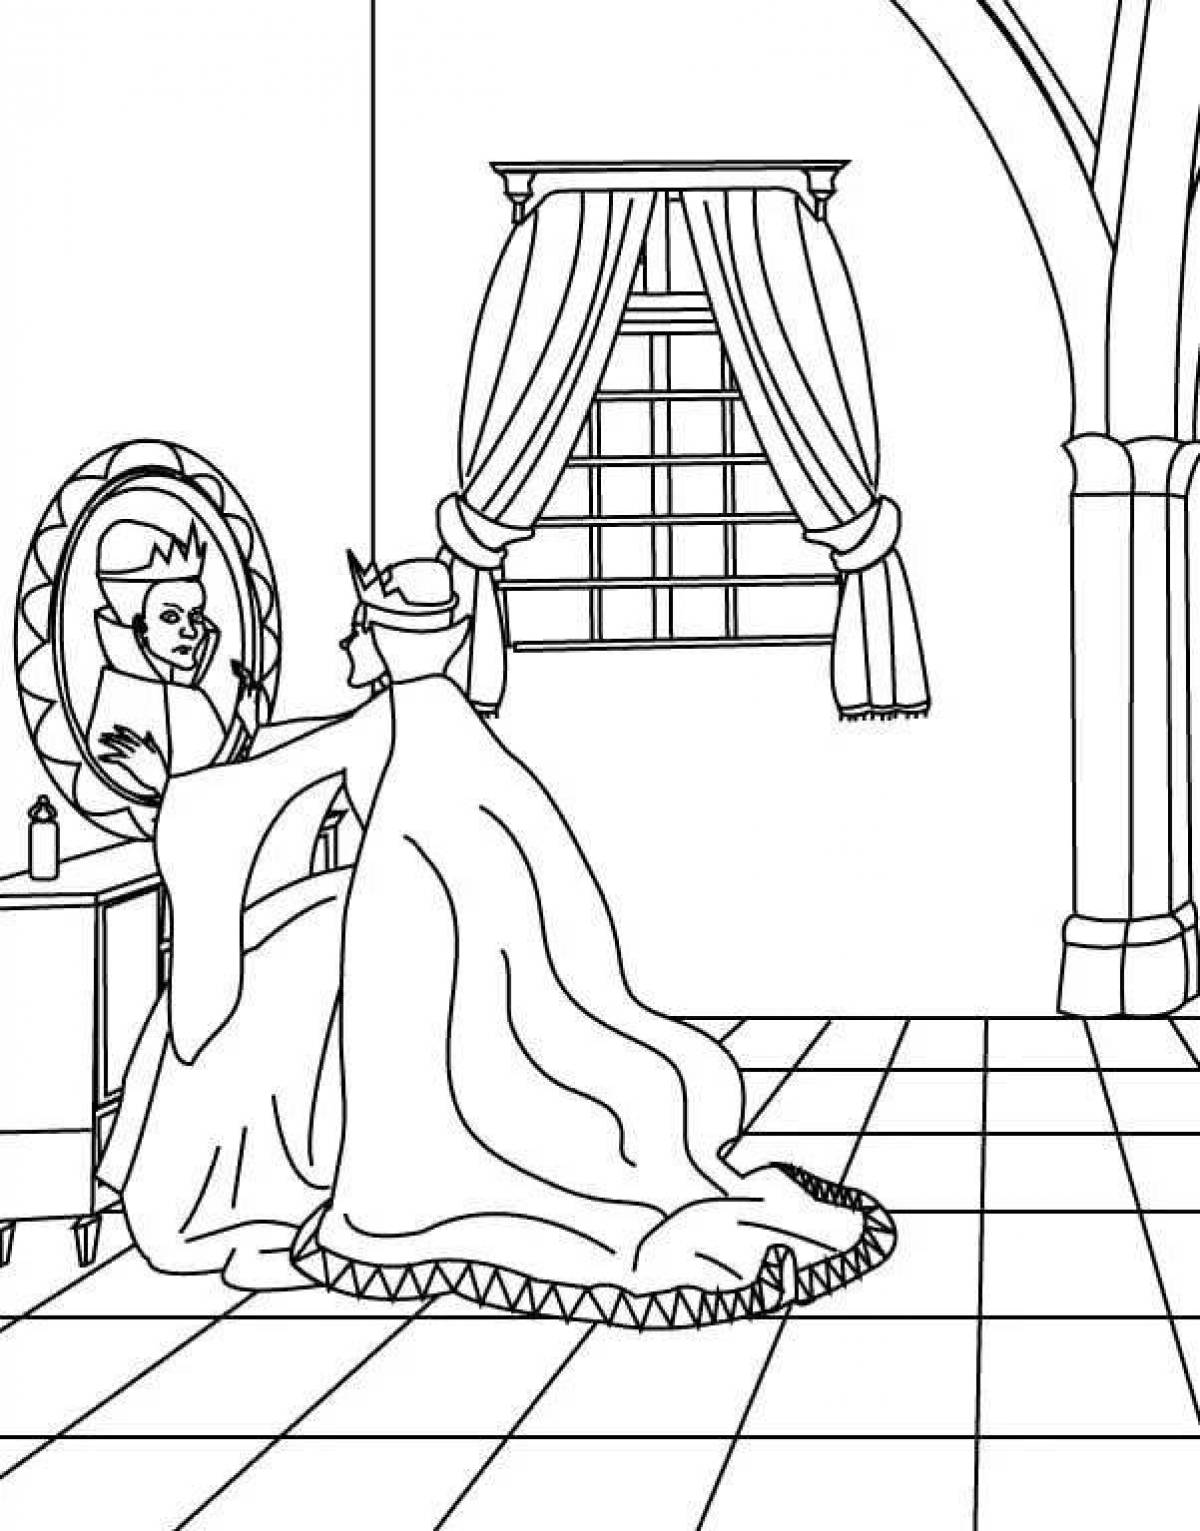 Иллюстрация к сказке о мертвой царевне и семи богатырях раскраска